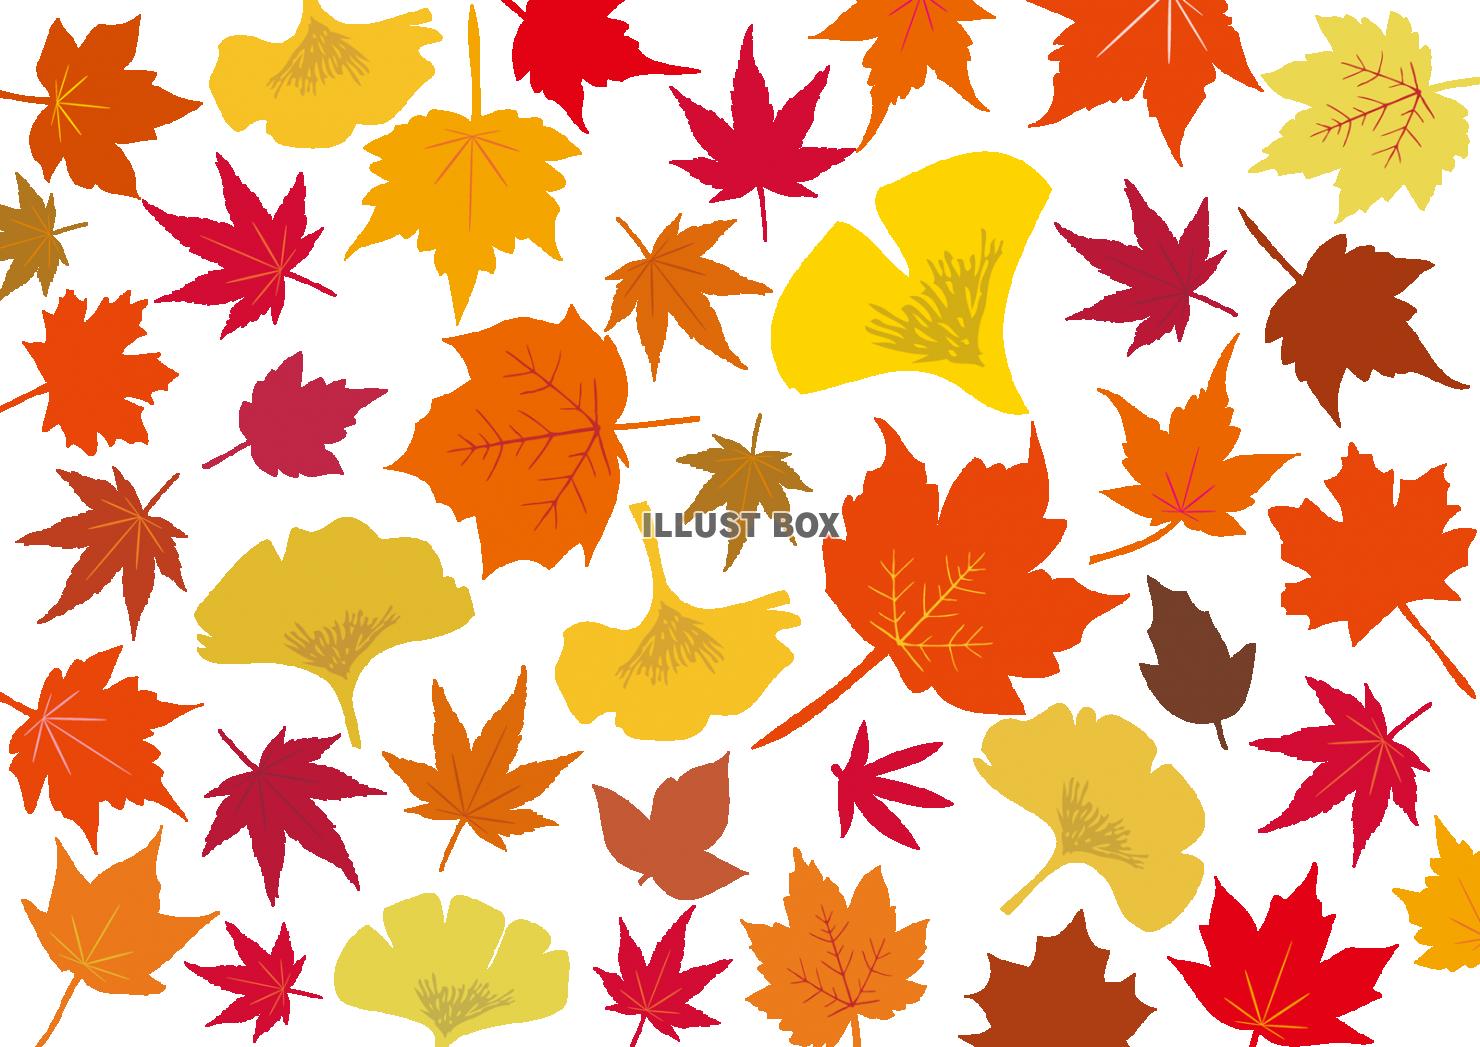 無料イラスト 秋冬紅葉もみじ銀杏10月モミジ11月イチョウ壁紙いちょう楓赤